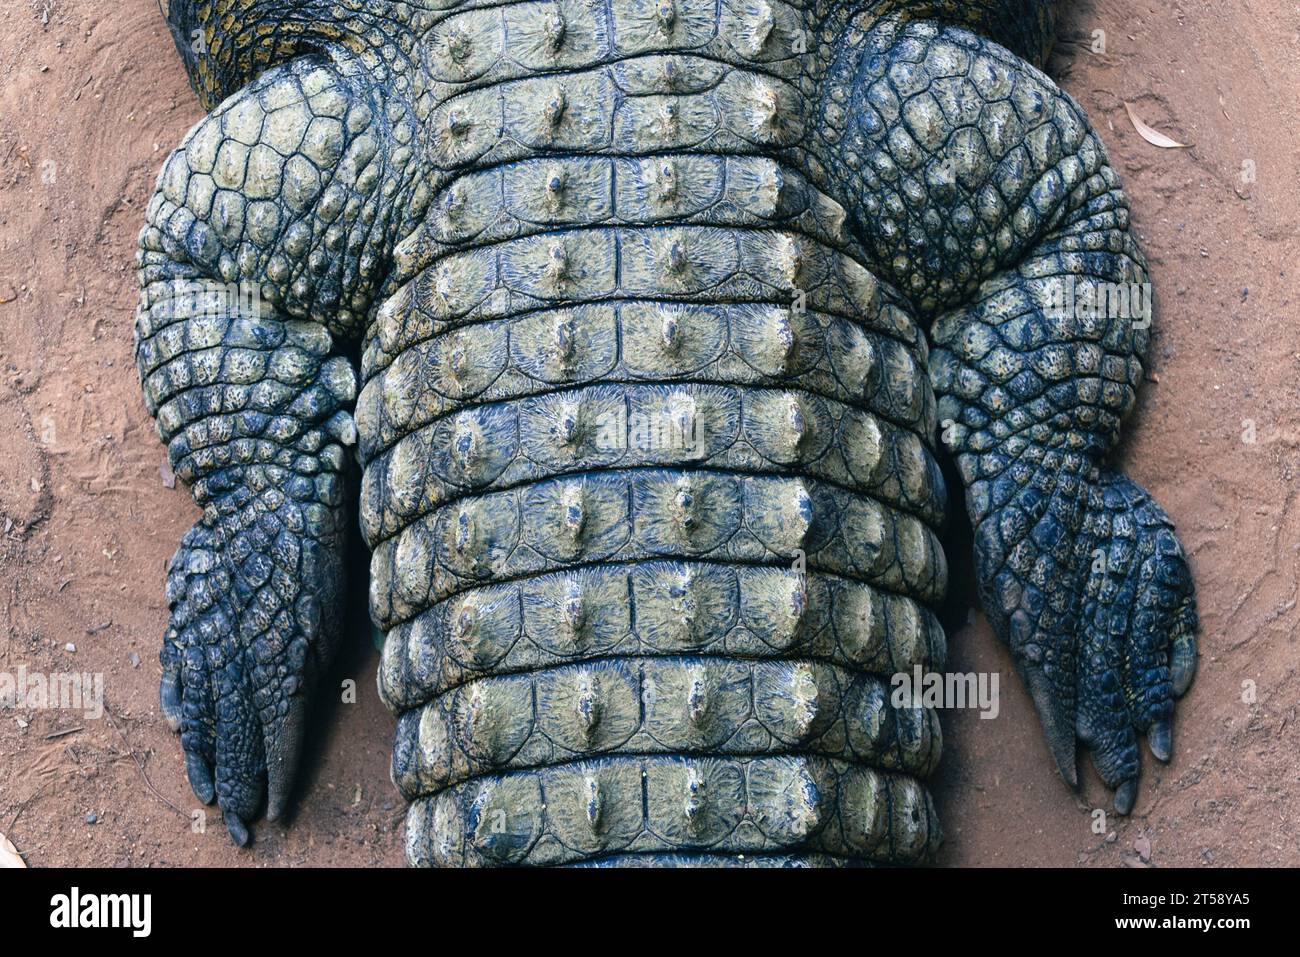 Ein Blick von oben auf die Hinterbeine eines Krokodils in Südafrika Stockfoto